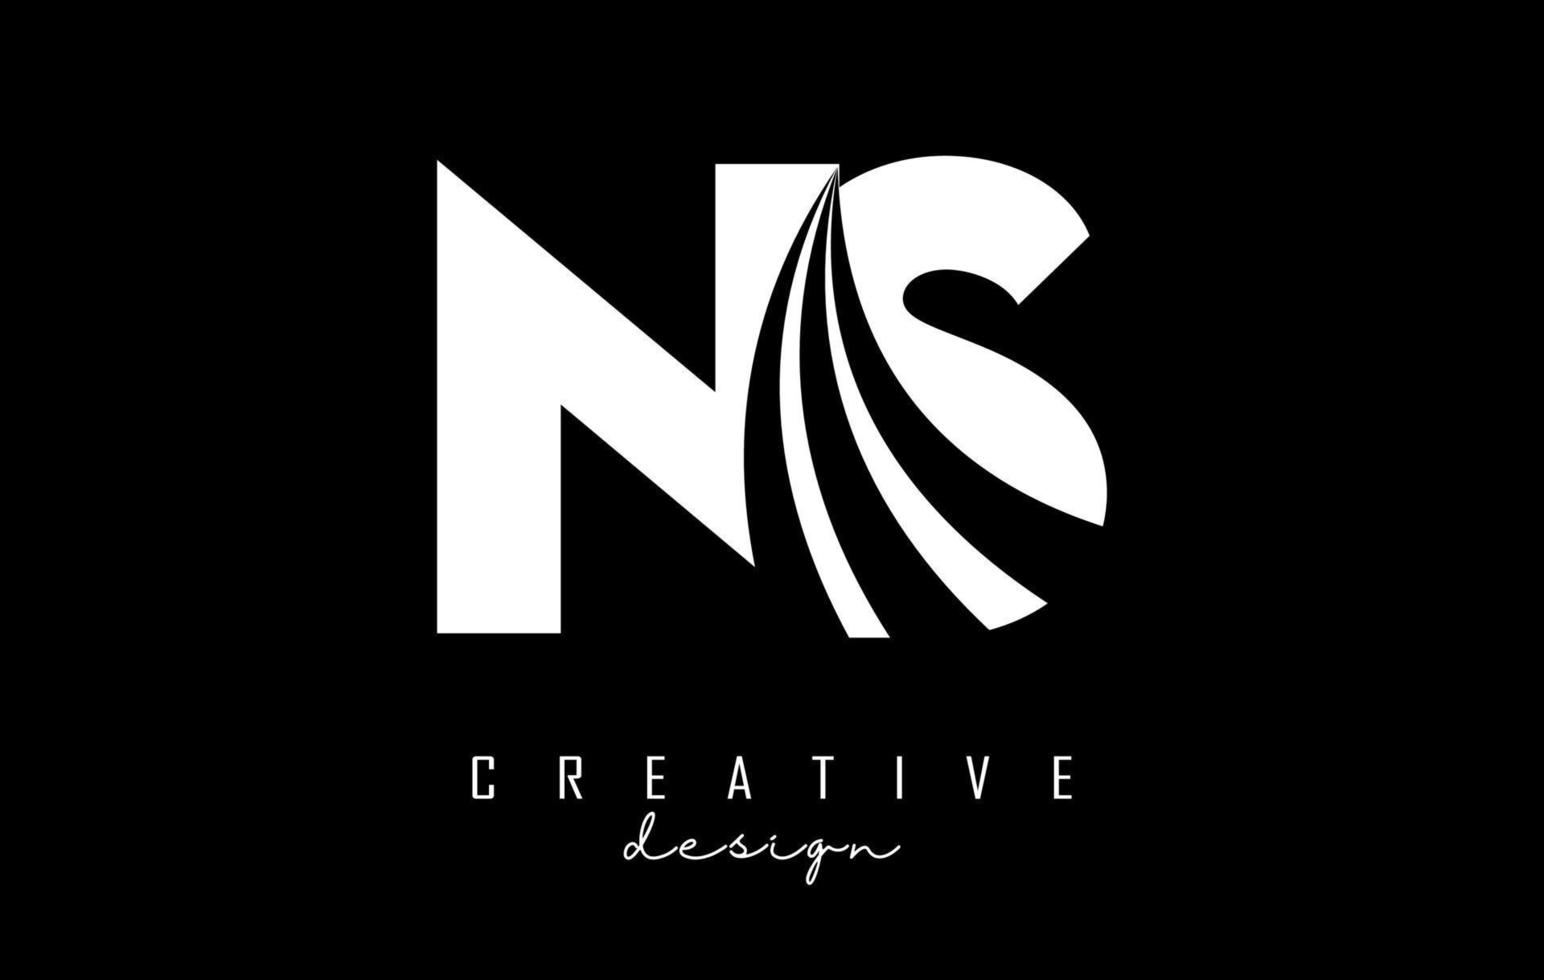 kreative weiße buchstaben ns ns-logo mit führenden linien und straßenkonzeptdesign. Buchstaben mit geometrischem Design. vektor